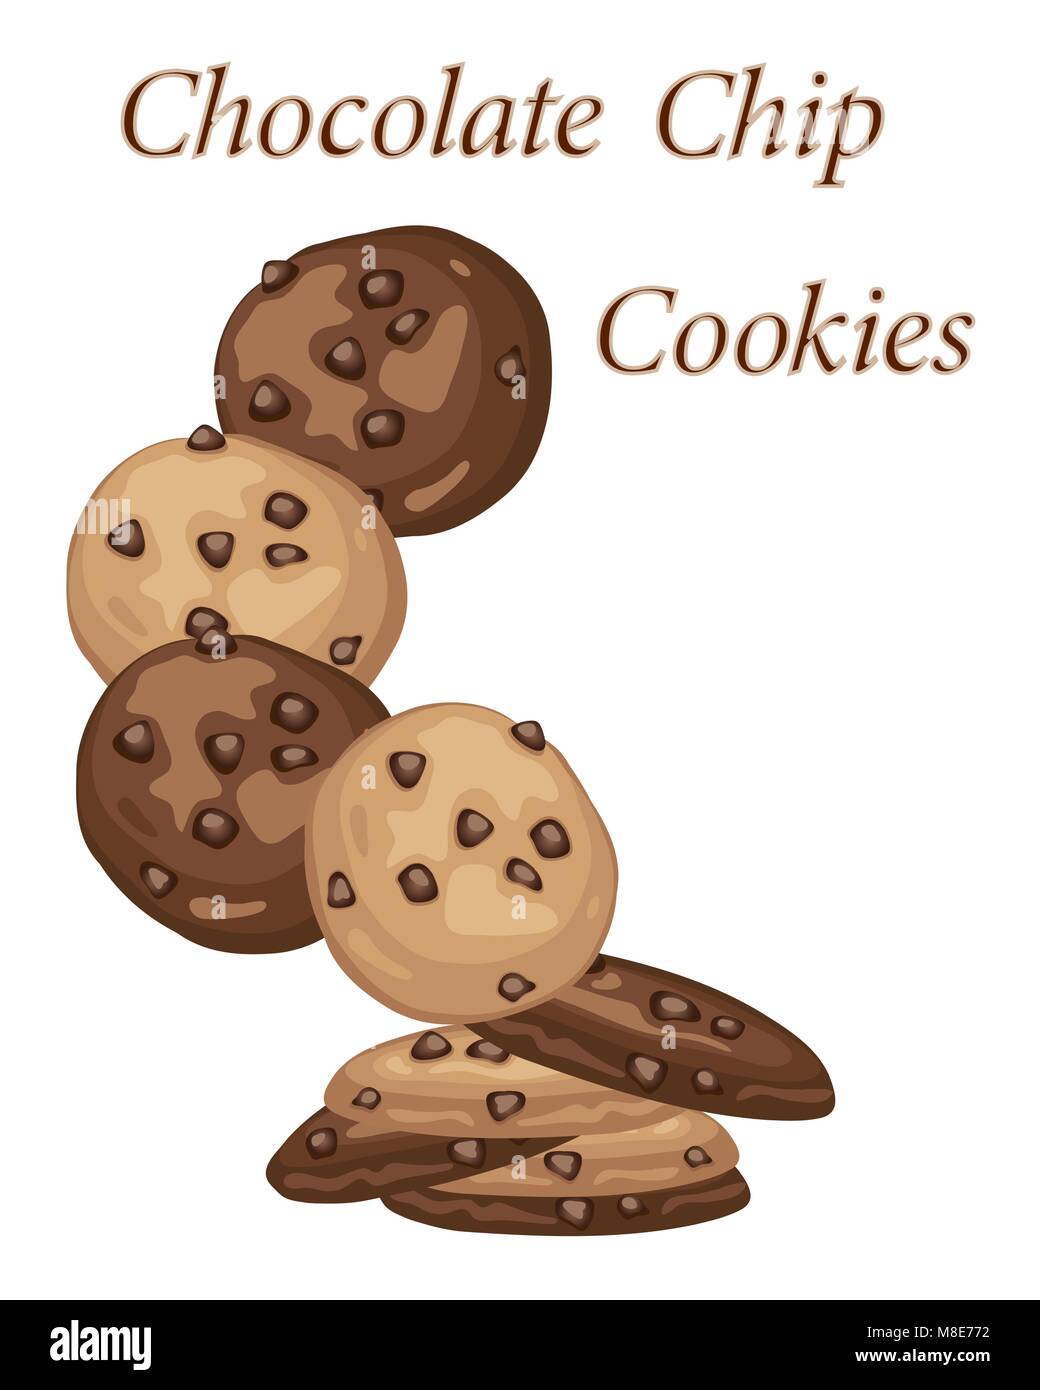 Un vecteur illustration en format eps 10 de chocolate chip cookie annonce avec de délicieux biscuits faits maison sur un fond blanc Illustration de Vecteur